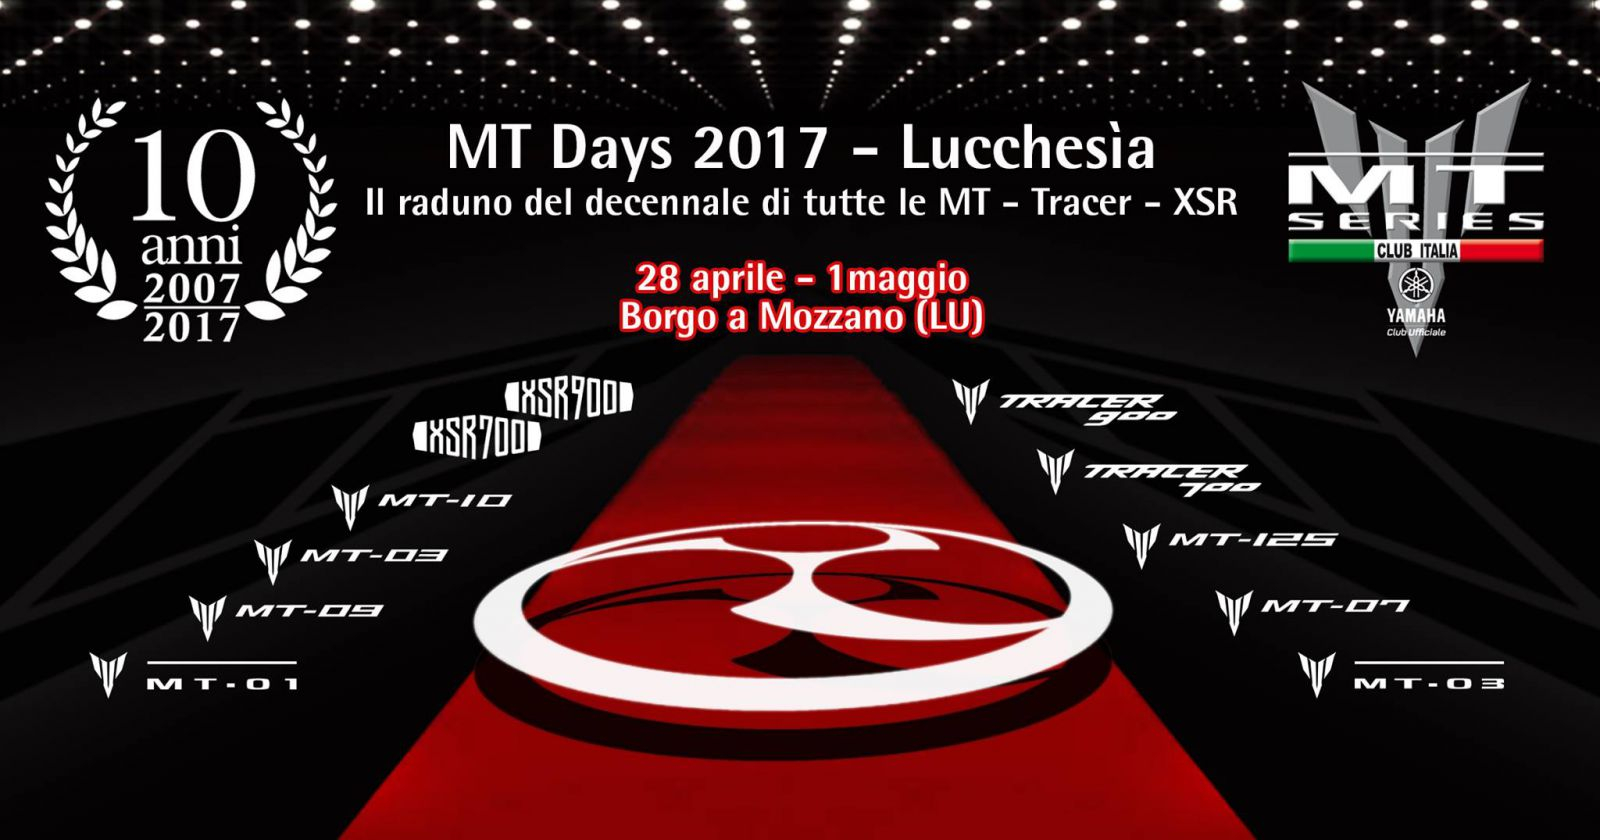 MT Days 2017 - Lucchesìa